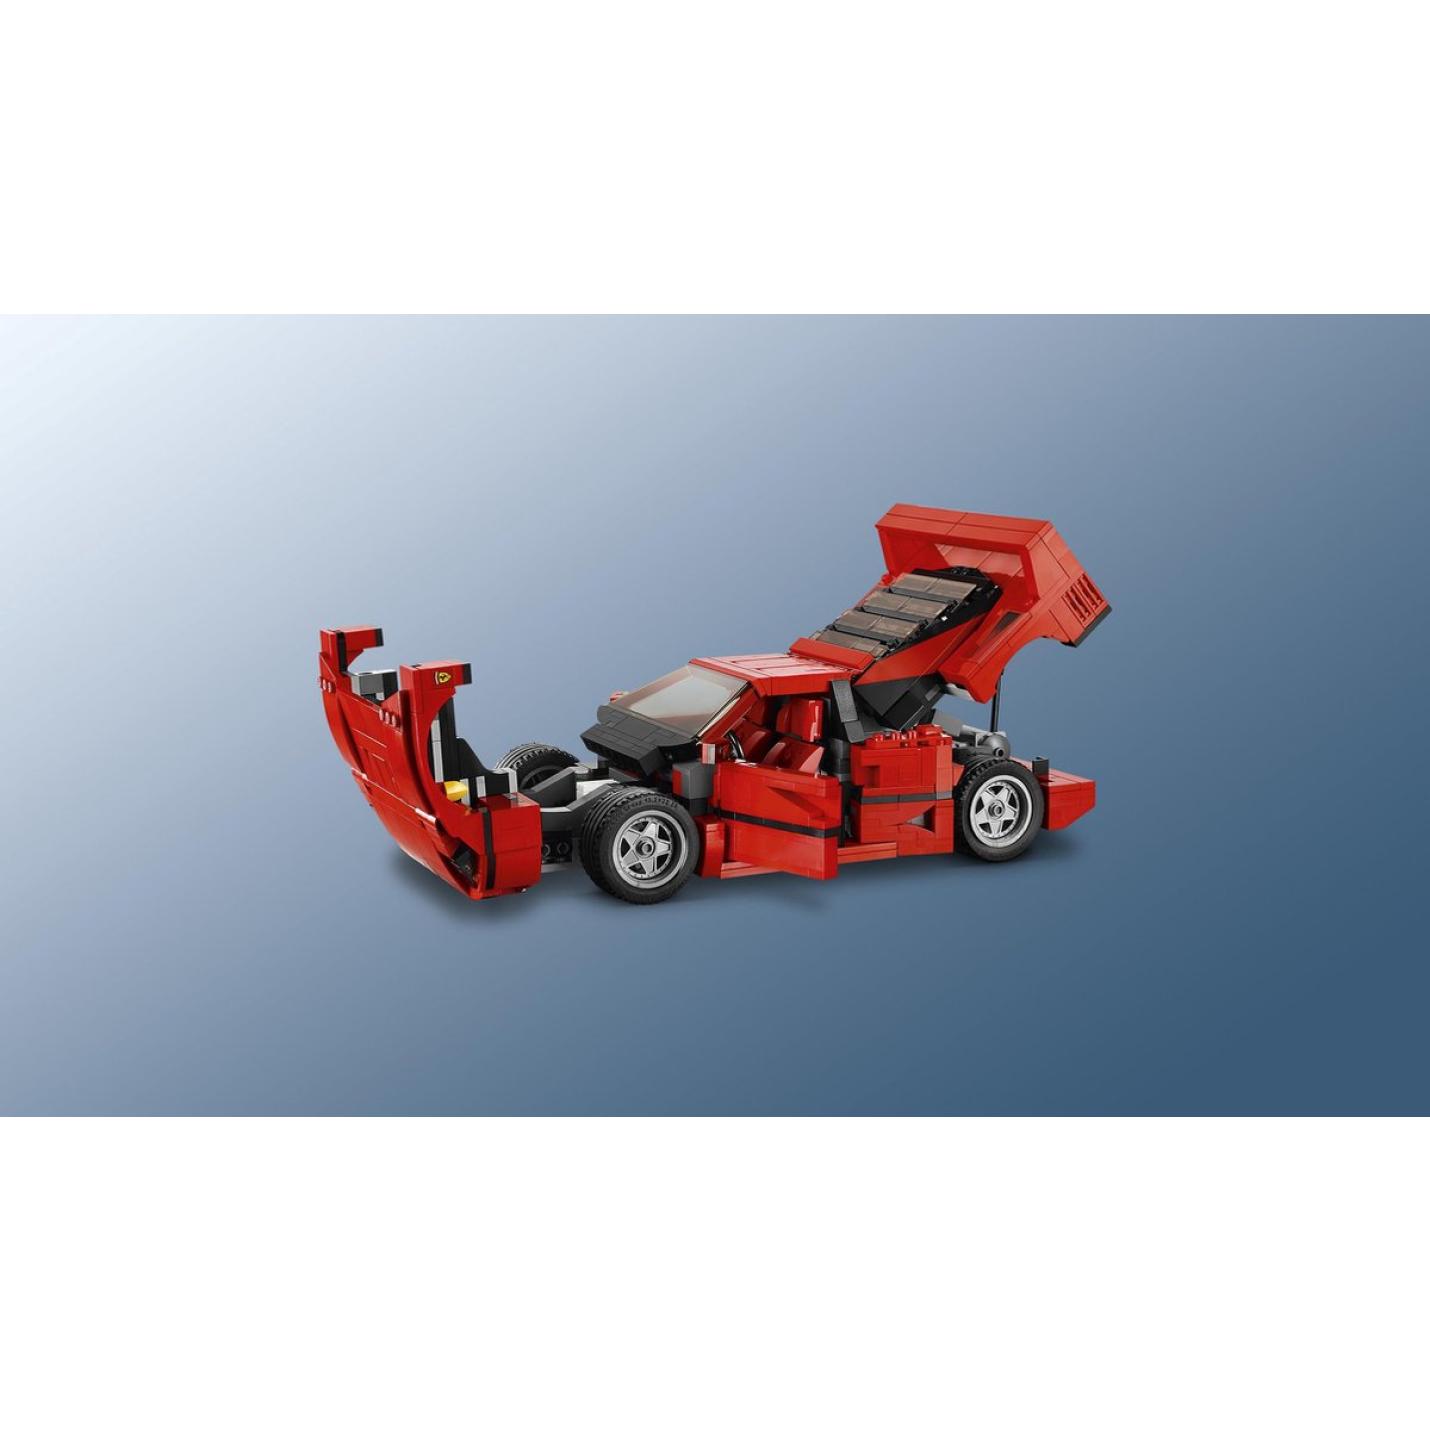 LEGO Creator Expert Ferrari F40 - 10248 12